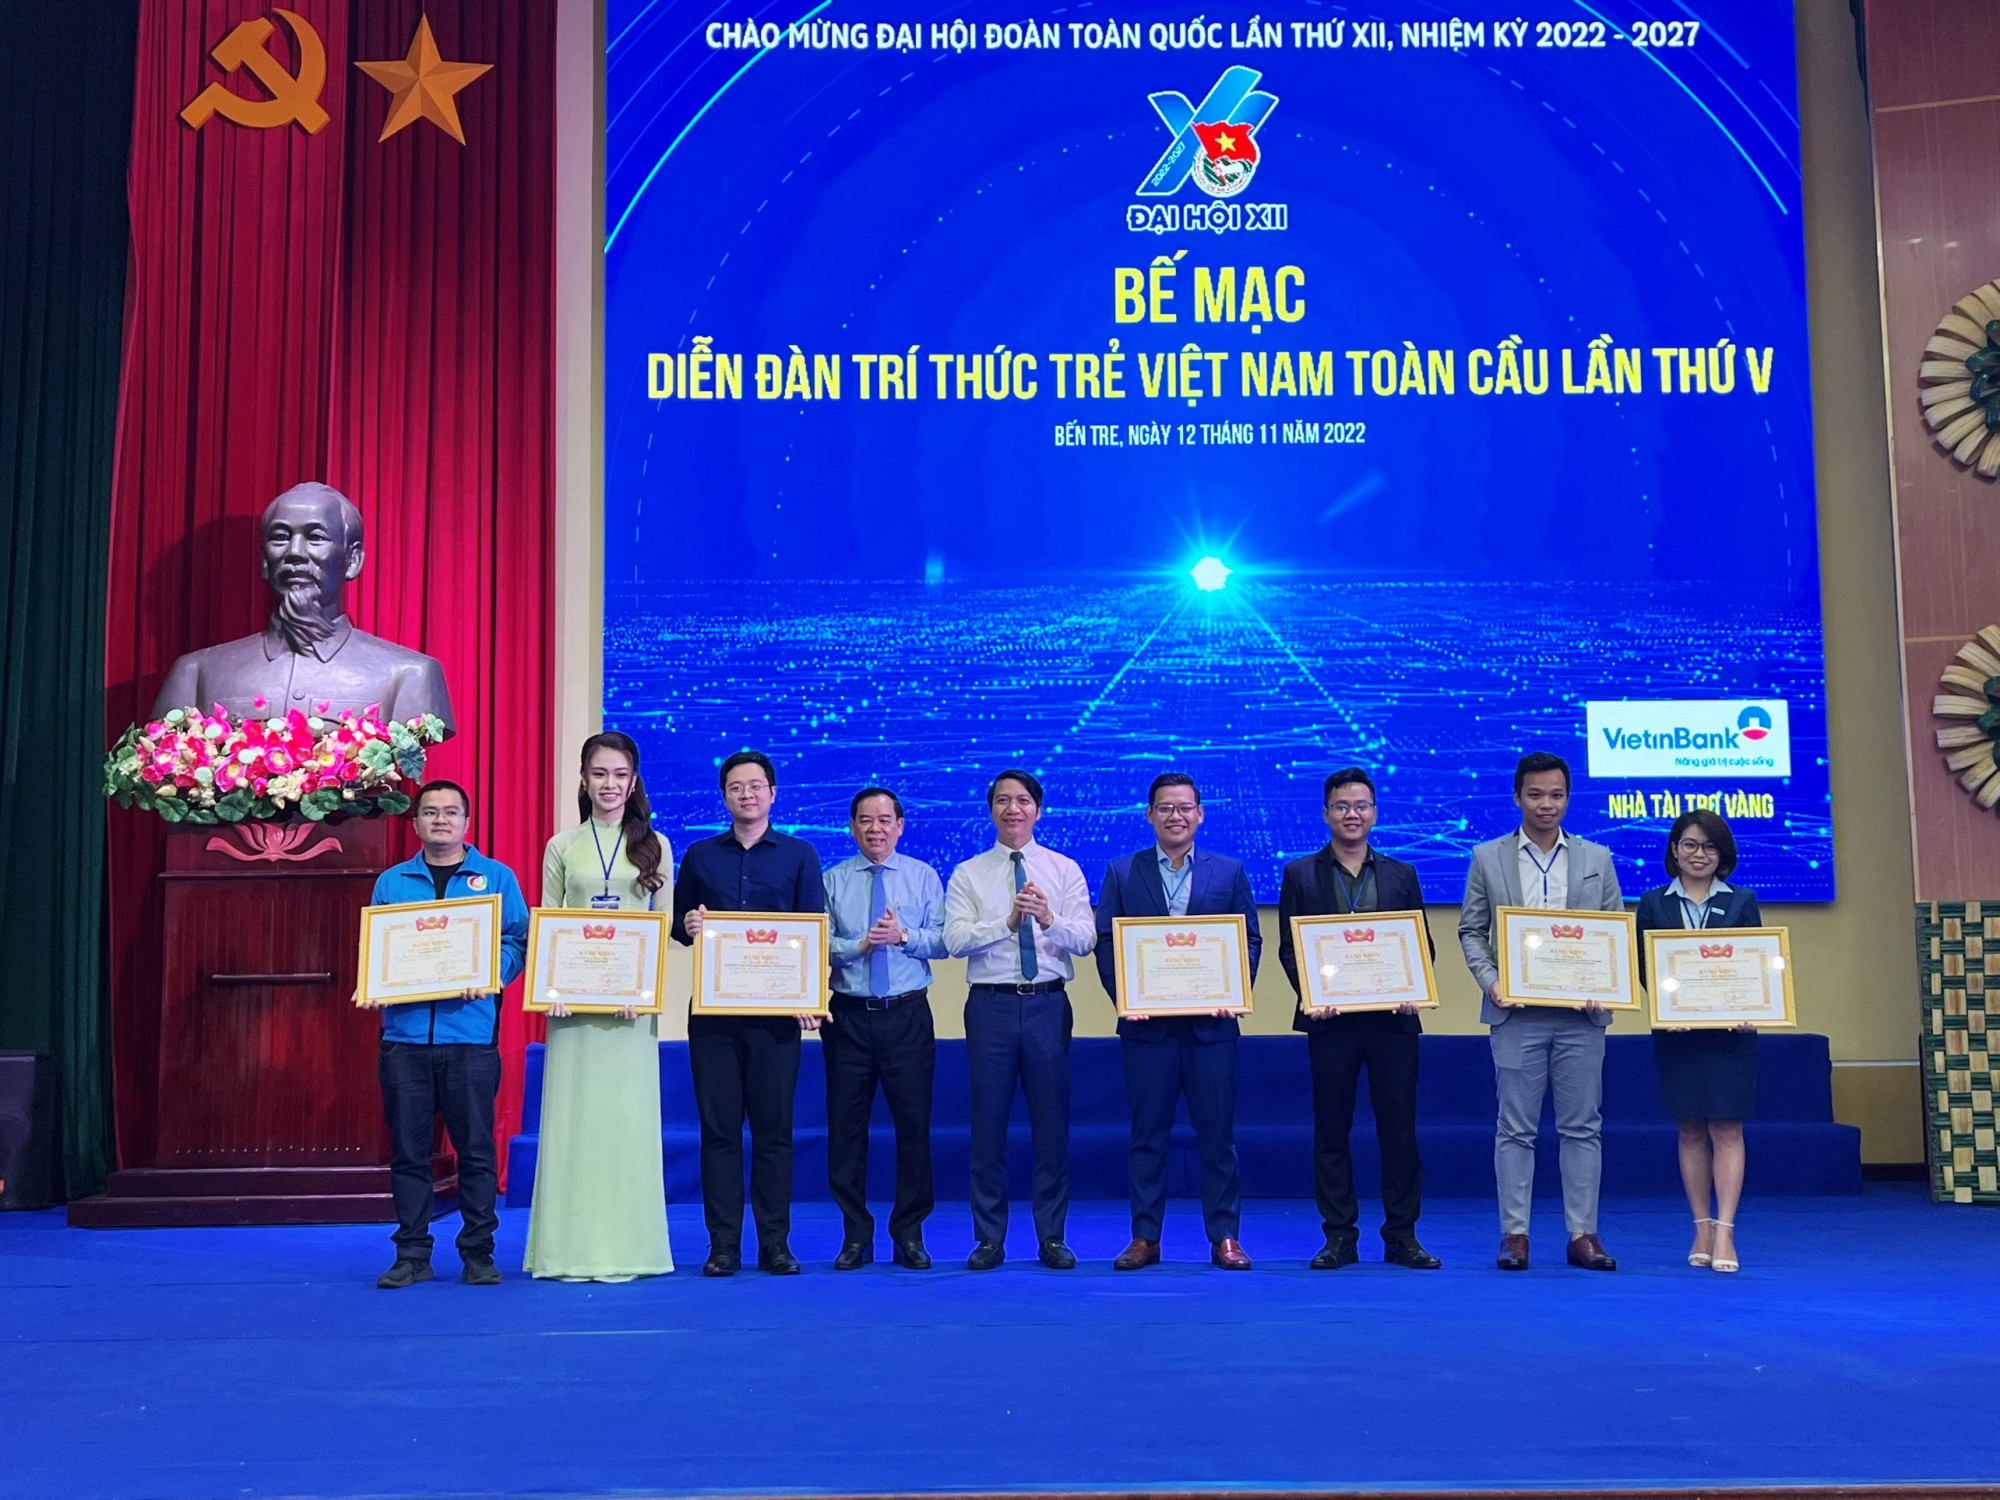 Ban tổ chức tặng Bằng khen cho các cá nhân có thành tích xuất sắc trong tổ chức Diễn đàn trí thức trẻ Việt Nam toàn cầu lần thứ V.